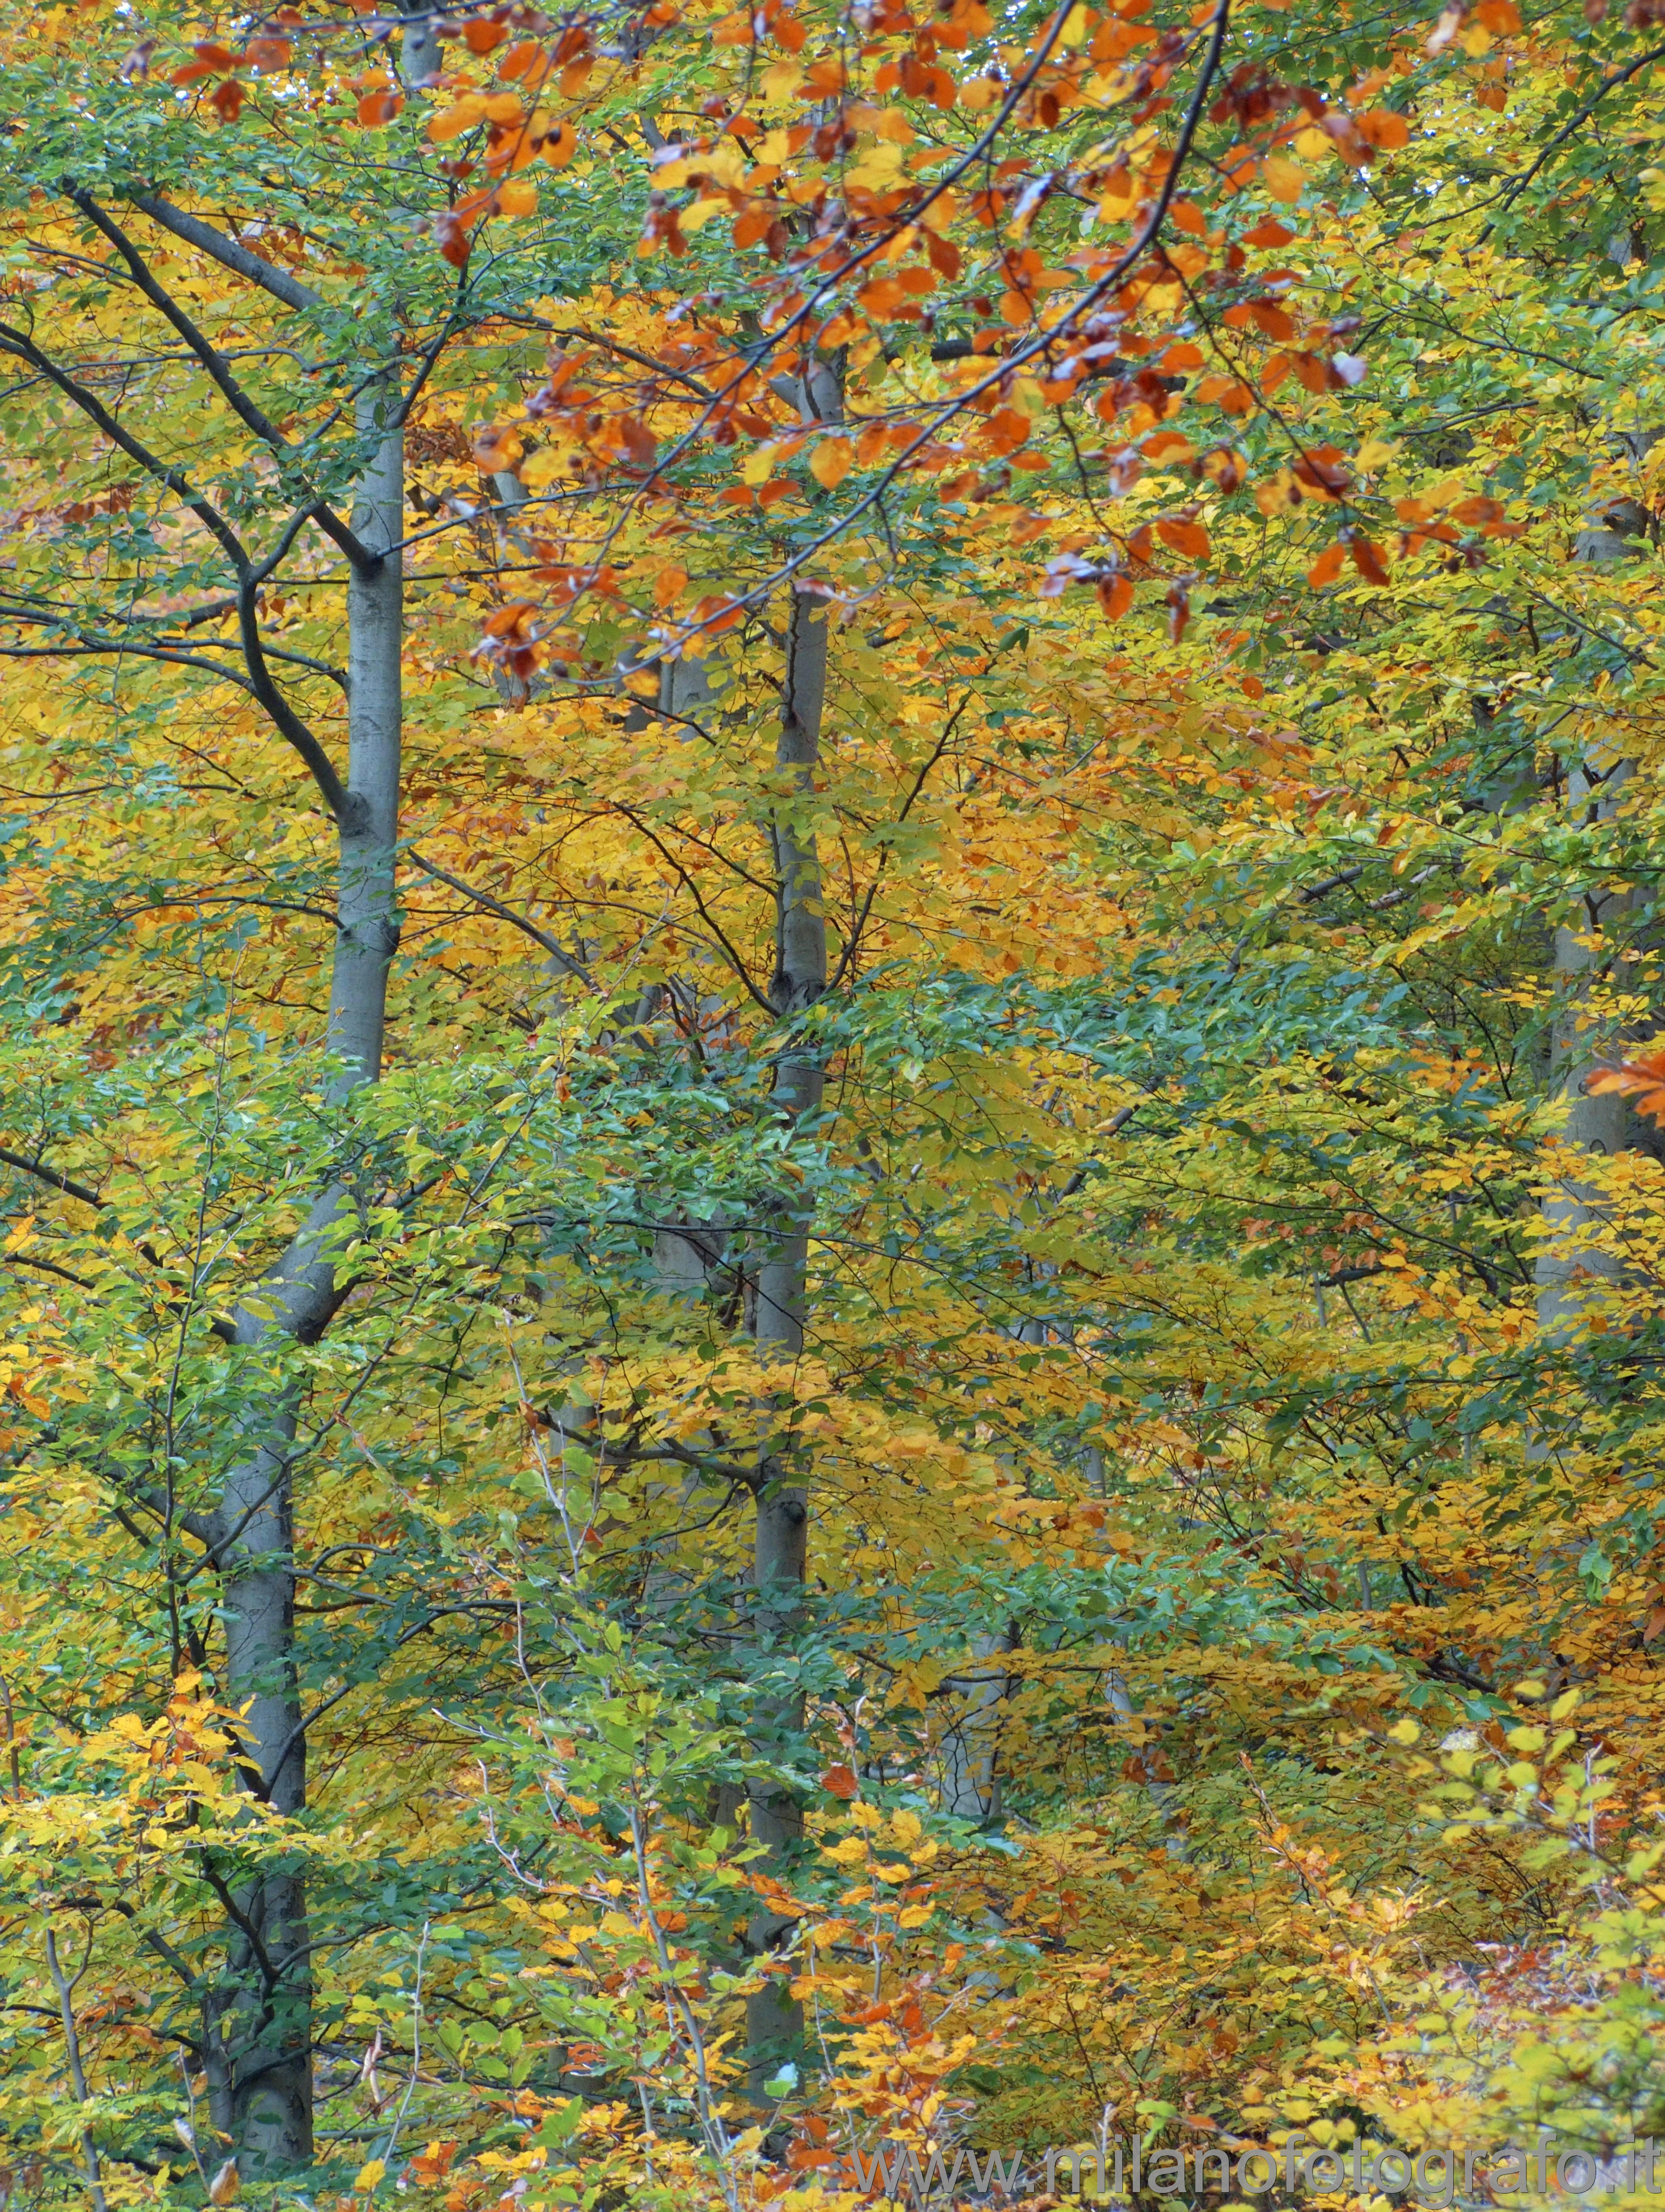 Panoramica Zegna (Biella): I colori del bosco in autunno - Panoramica Zegna (Biella)